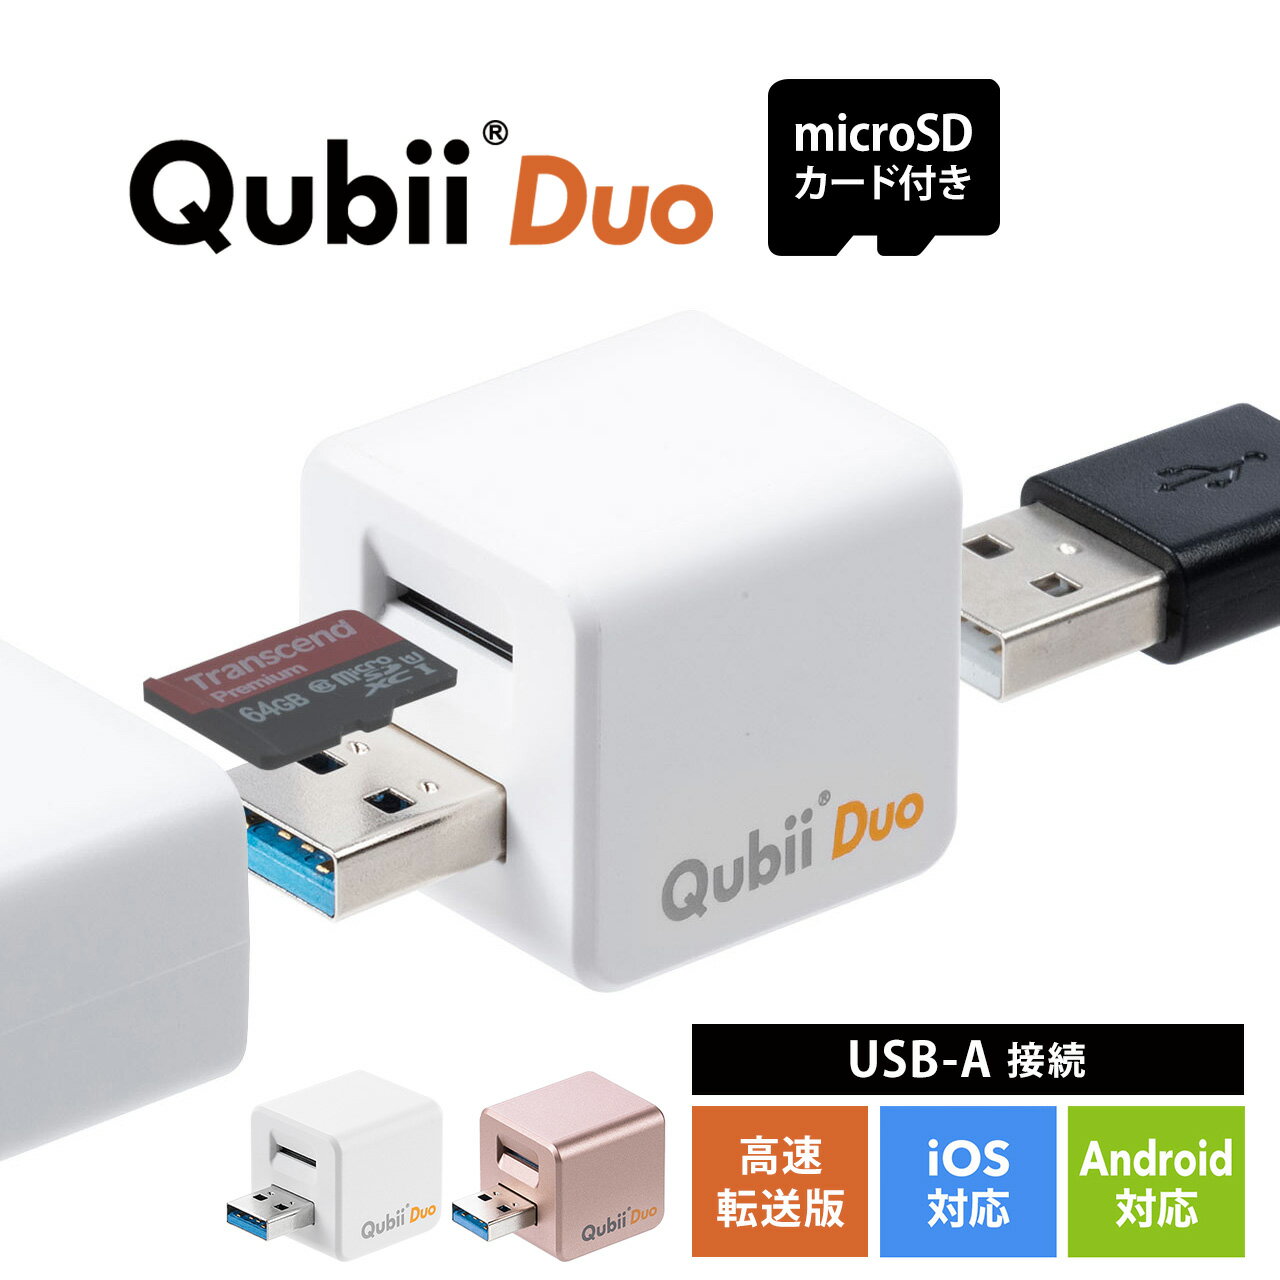 【火曜限定 クーポンで800円OFF】【microSDカード付き】【楽天1位受賞】Qubii Duo Type A iPhone iPad iOS Android …